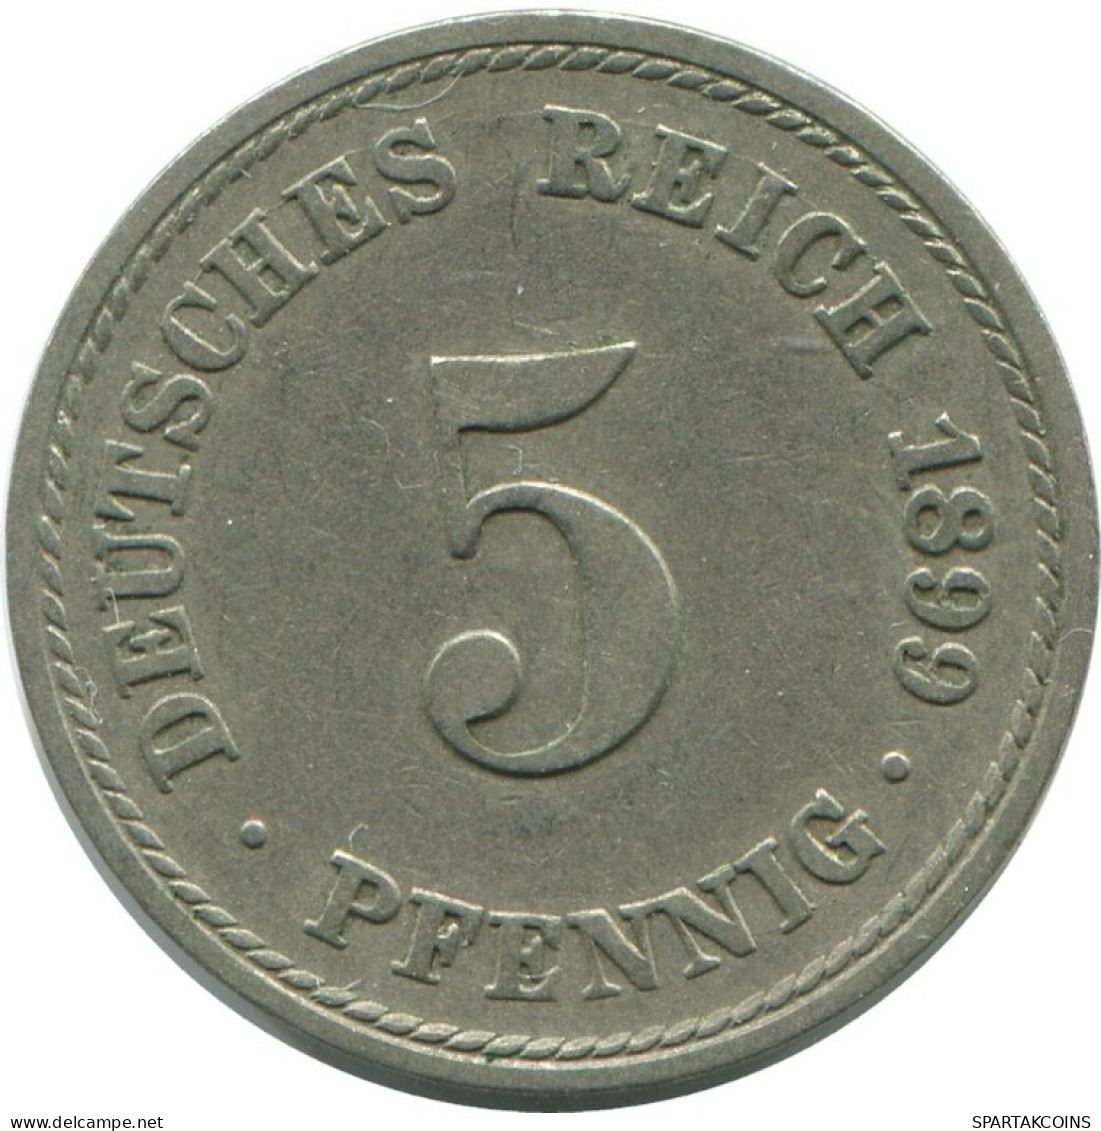 5 PFENNIG 1899 A GERMANY Coin #AE667.U.A - 5 Pfennig